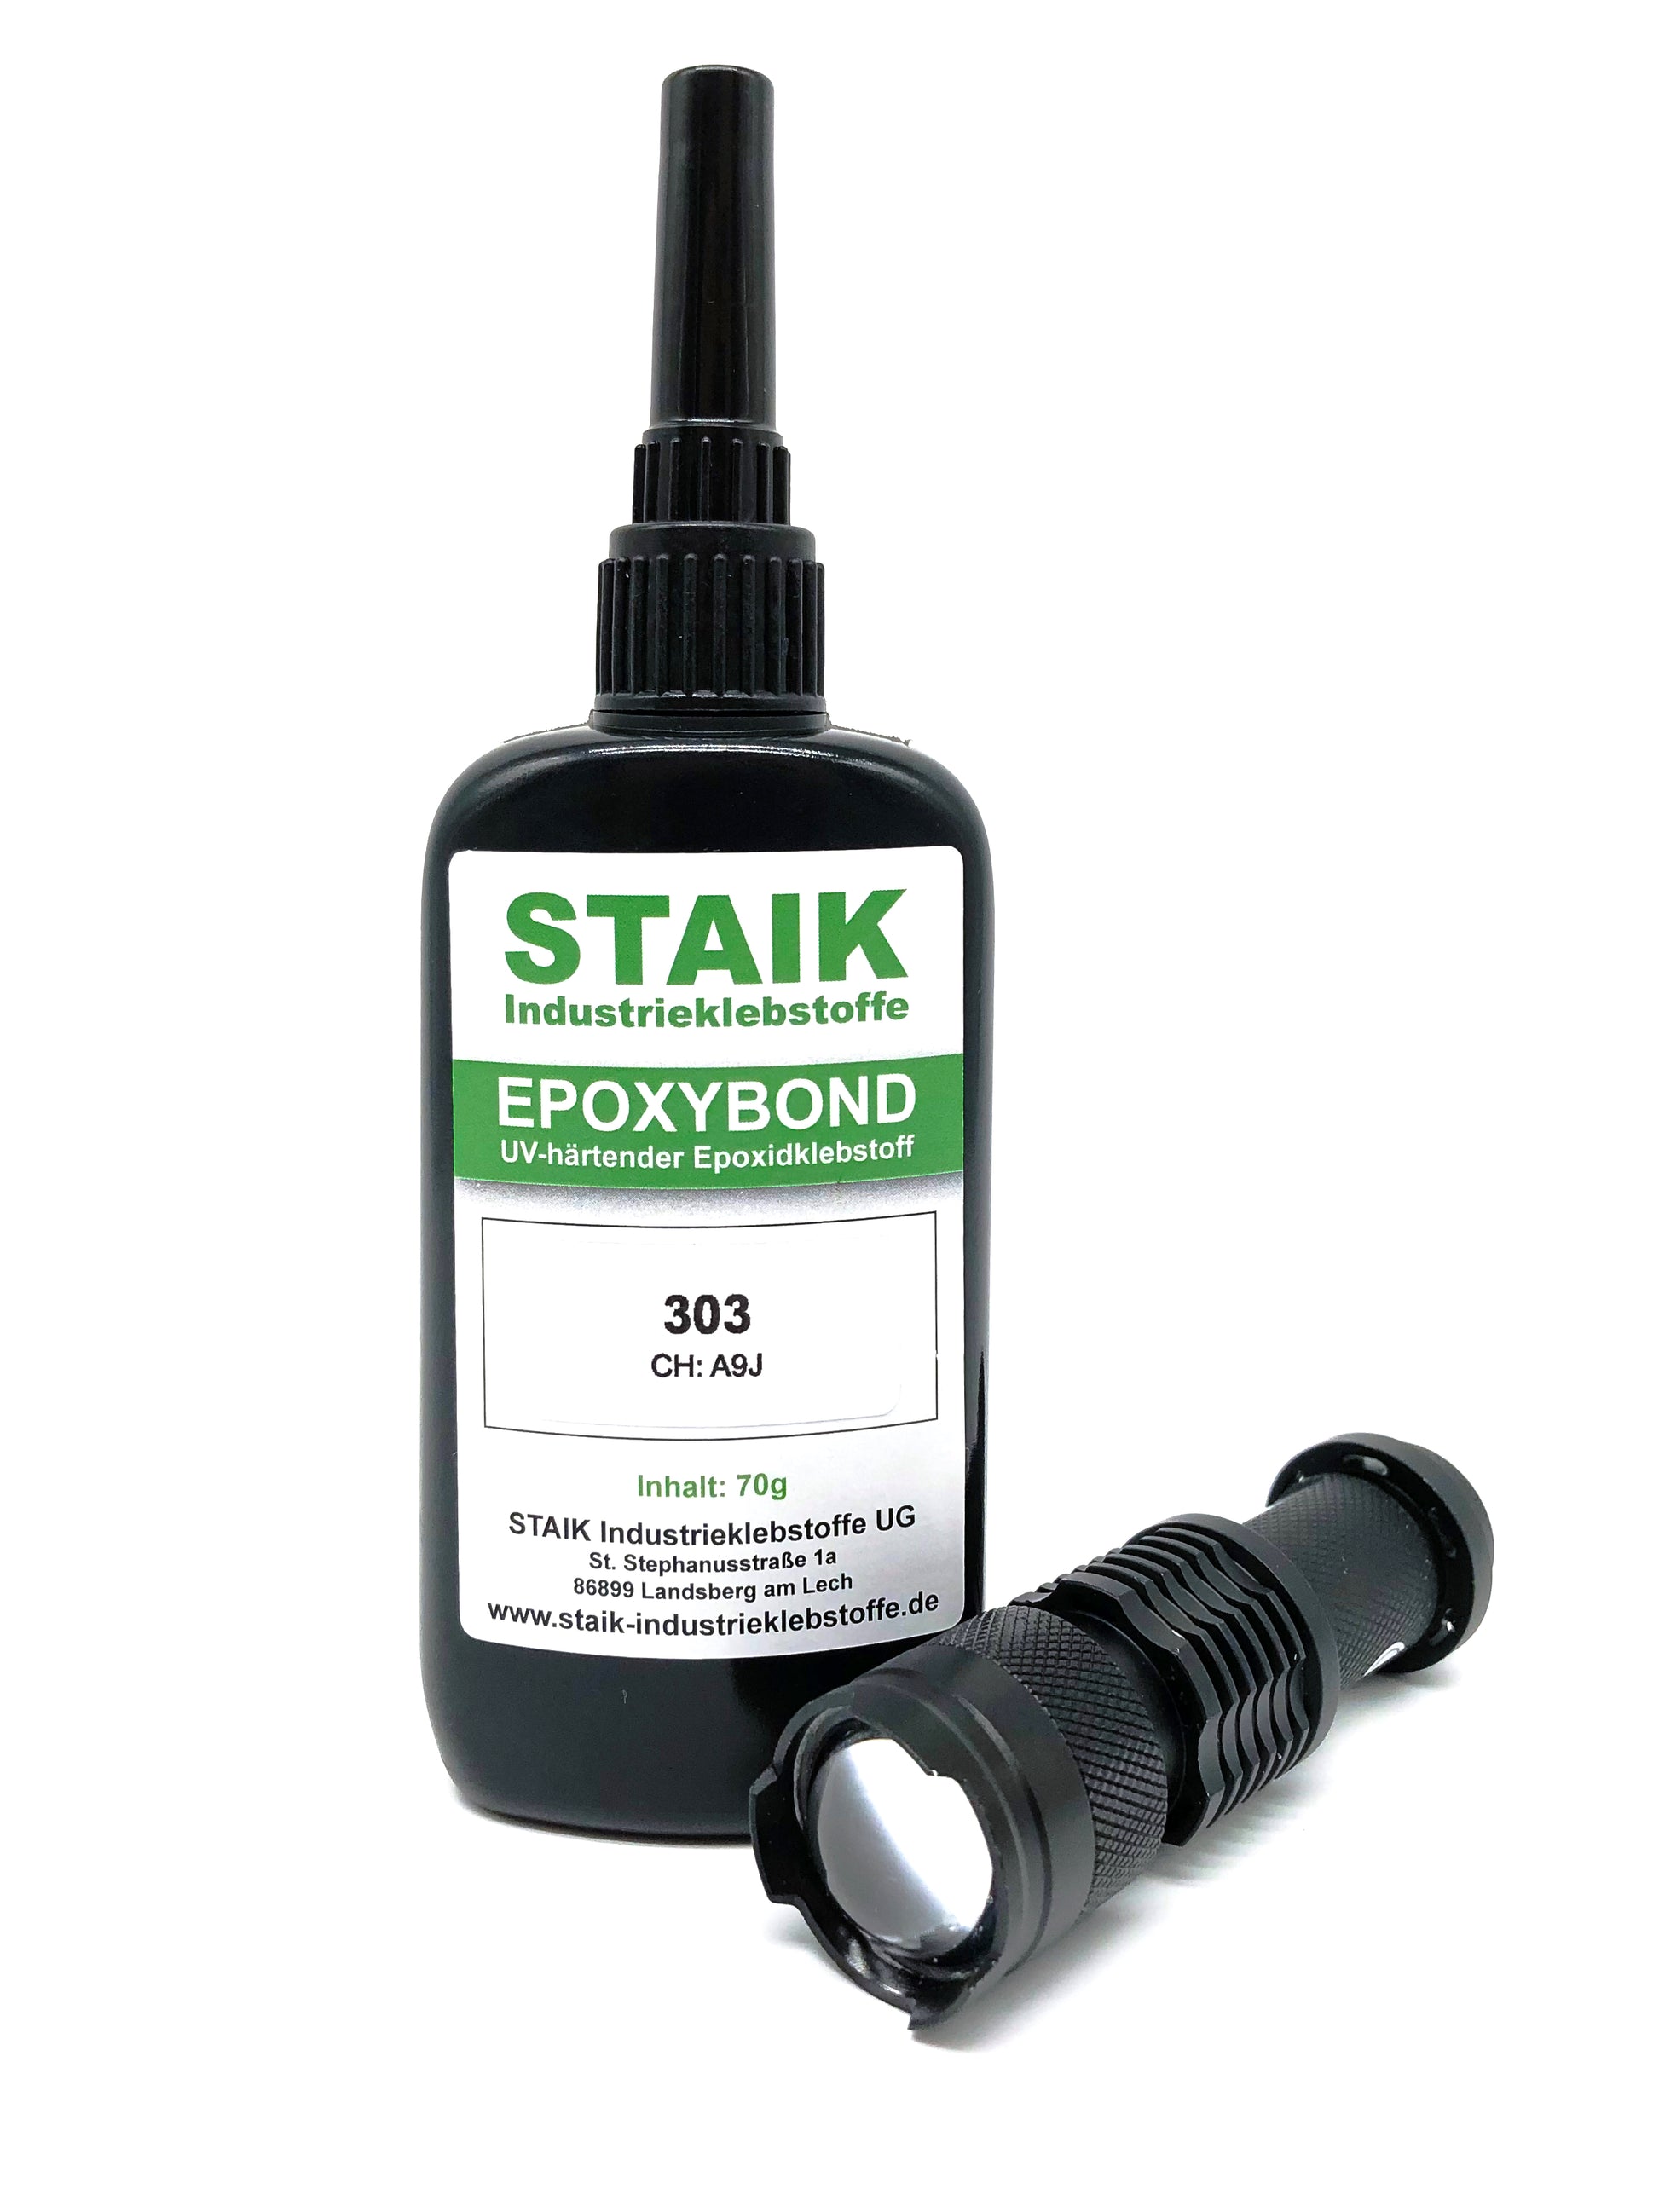 Epoxybond 303 ist ein dünnflüssiger Kunststoffkleber